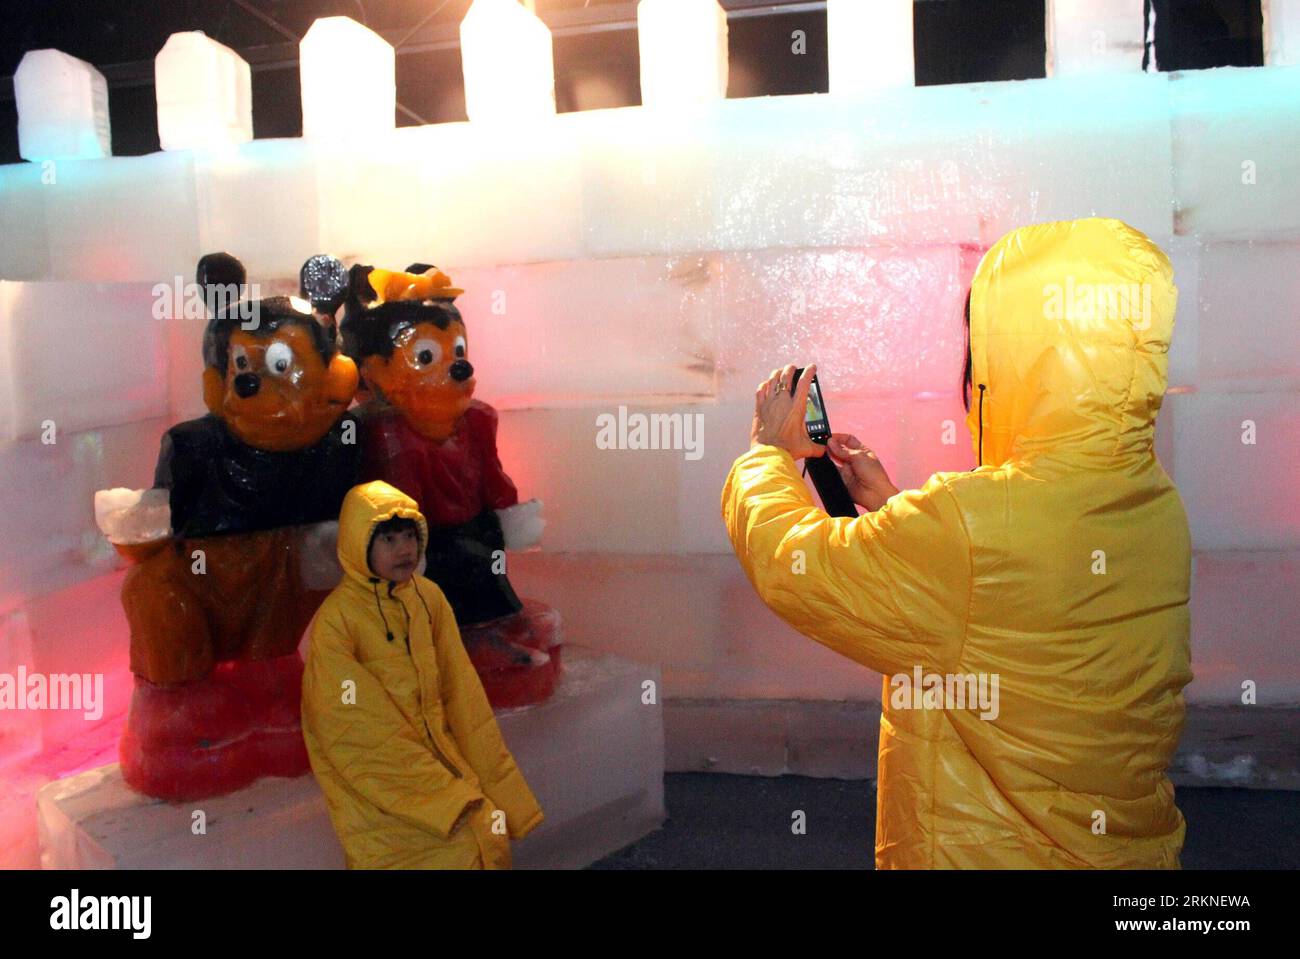 Bildnummer : 57107048 Datum : 25.02.2012 Copyright : imago/Xinhua (120225) -- YANGON, 25 février 2012 (Xinhua) -- les visiteurs prennent des photos devant des sculptures de glace lors du spectacle des merveilles de glace à Yangon, Myanmar, le 25 février 2012. (Xinhua/U Aung) (dzl) MYANMAR-YANGON-ICE WONDERLAND PUBLICATIONxNOTxINxCHN Gesellschaft EIS Skulptur Eisskulptur xns x0x 2012 quer 57107048 Date 25 02 2012 Copyright Imago XINHUA Yangon février 25 2012 XINHUA visiteurs prend des photos devant LA GLACE sculptures AU salon ICE Wonderland à Yangon Myanmar février 25 2012 XINHUA U Aung dzl Myanmar Yangon ICE Wonderland PUBLICATIONxN Banque D'Images